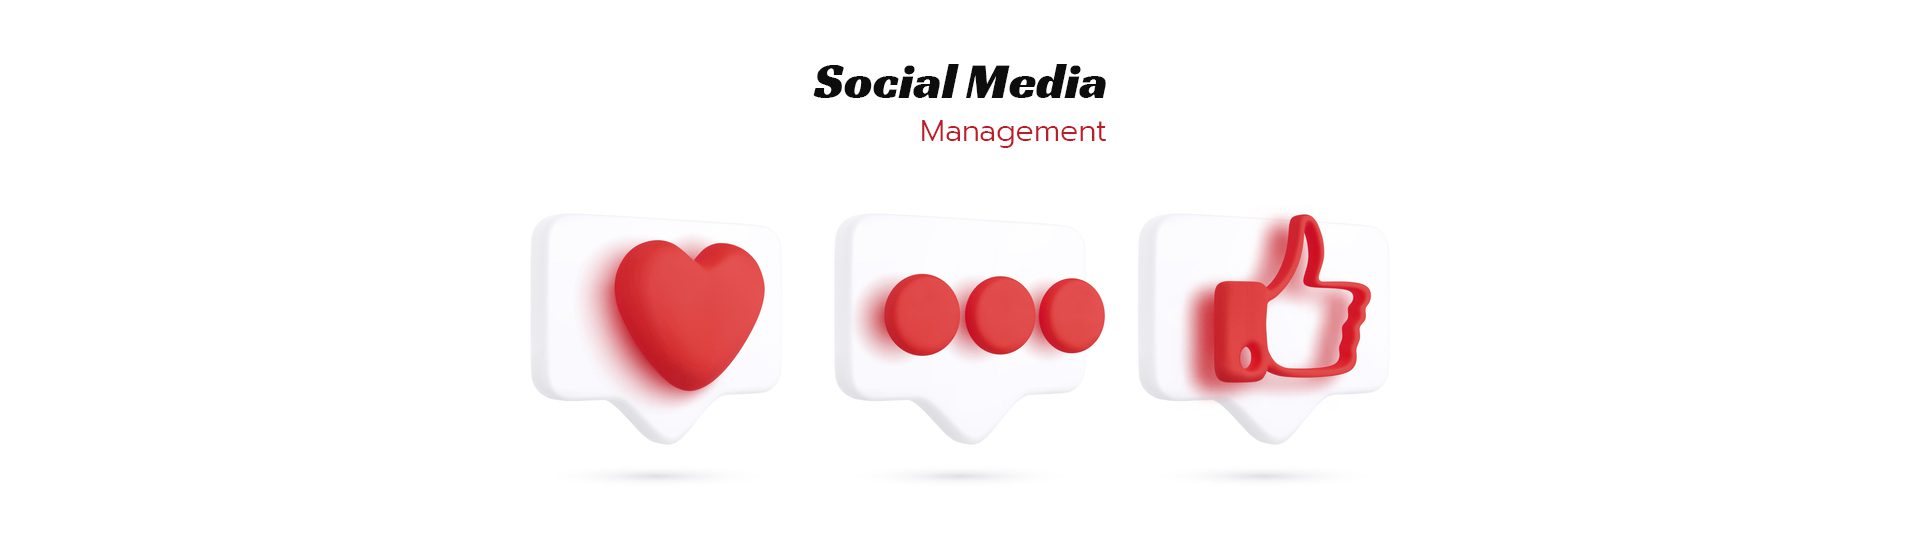 Social-media-management-marketing